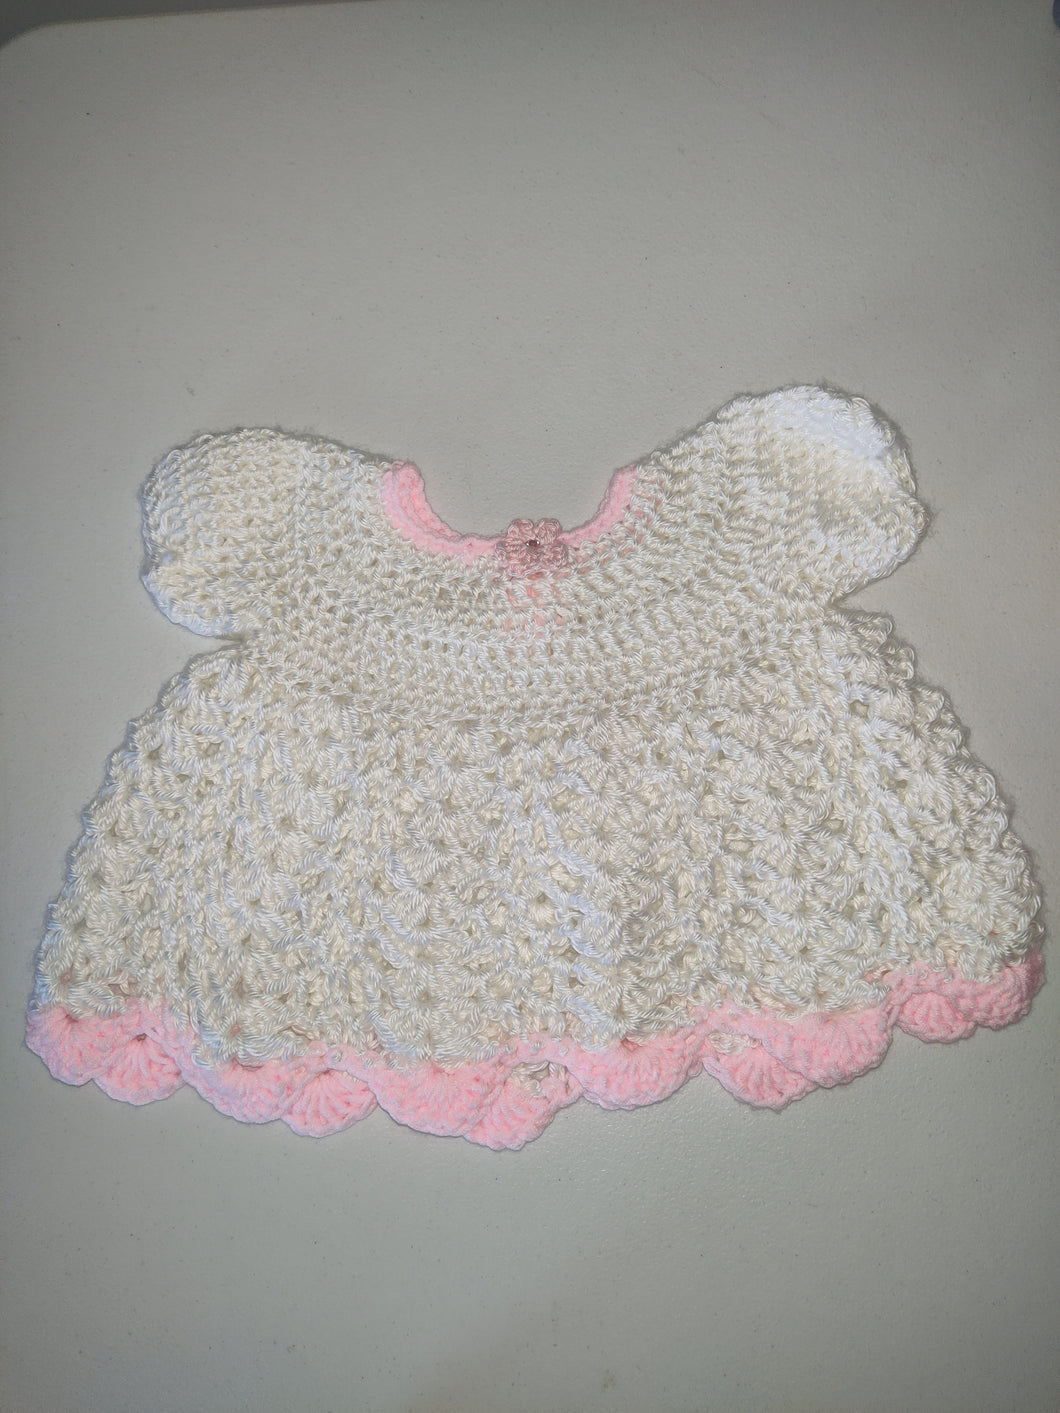 Hand Crochet Baby Dress. Size 3 months